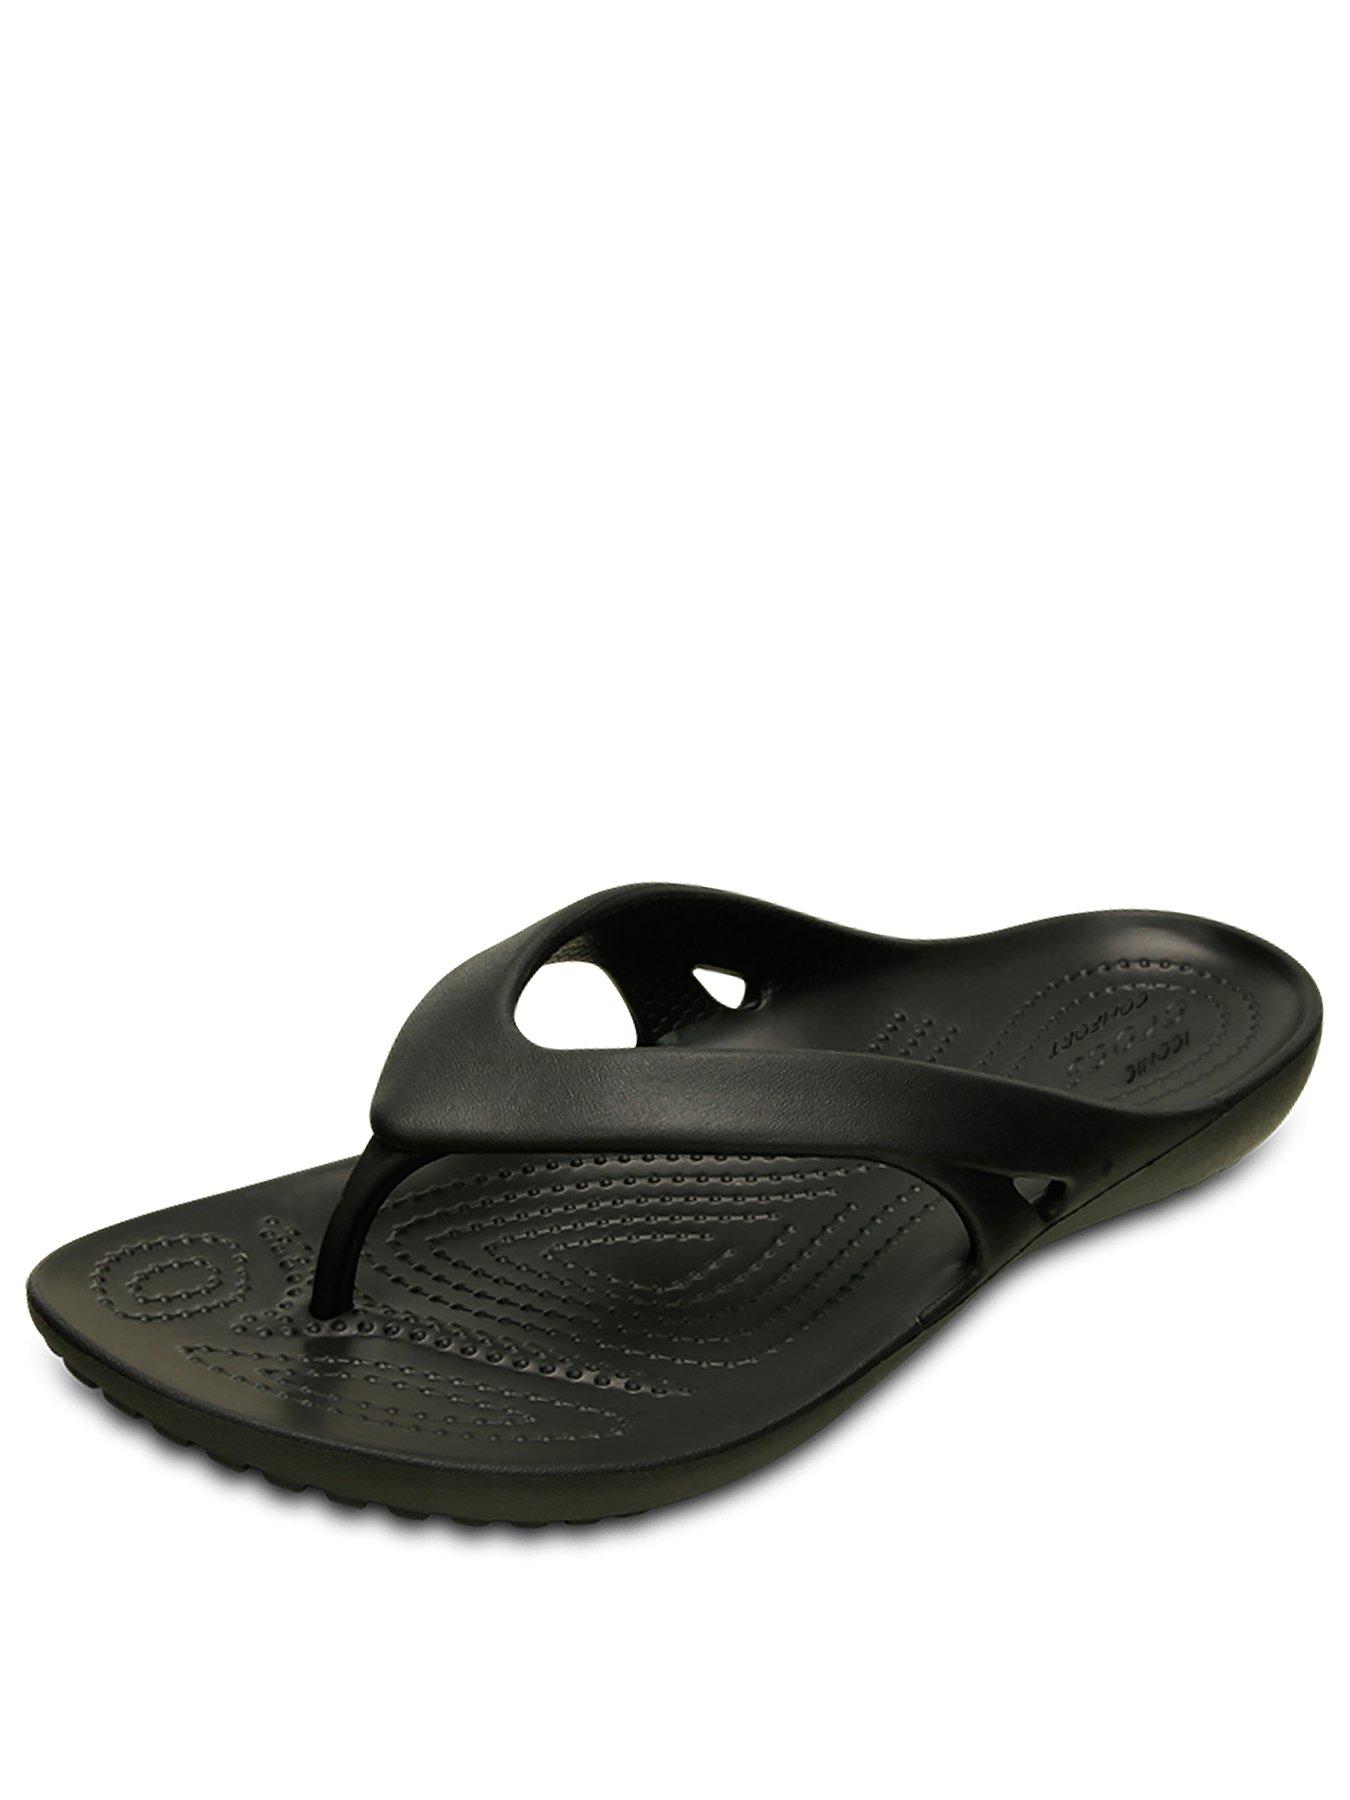 croc flip flops womens uk